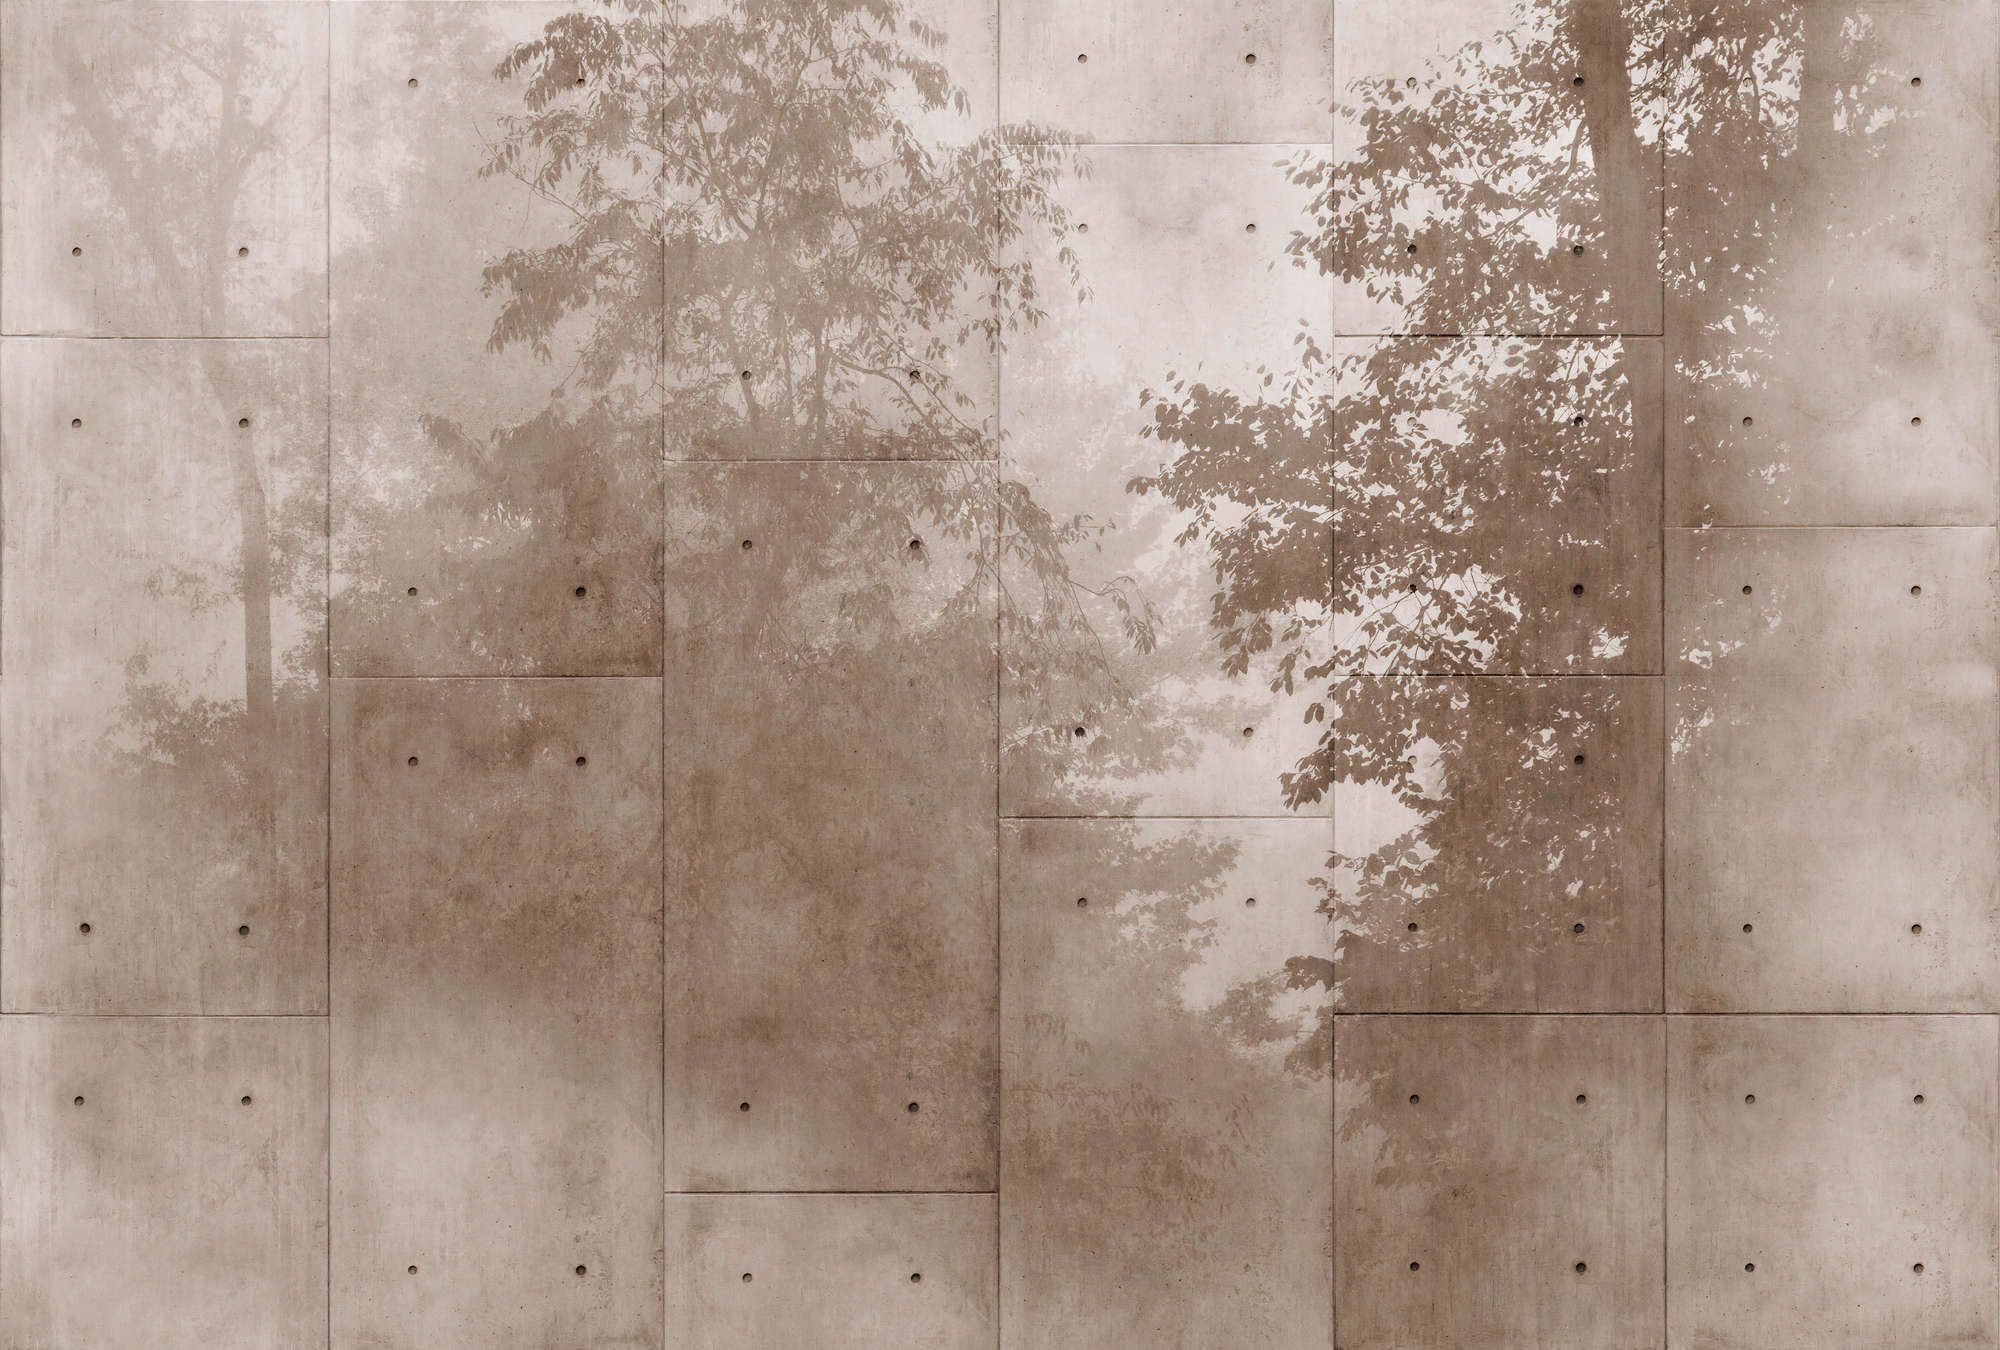             Fototapete »mytho« - Baumkronen auf Betonplatten – Glattes, leicht glänzendes Premiumvlies
        